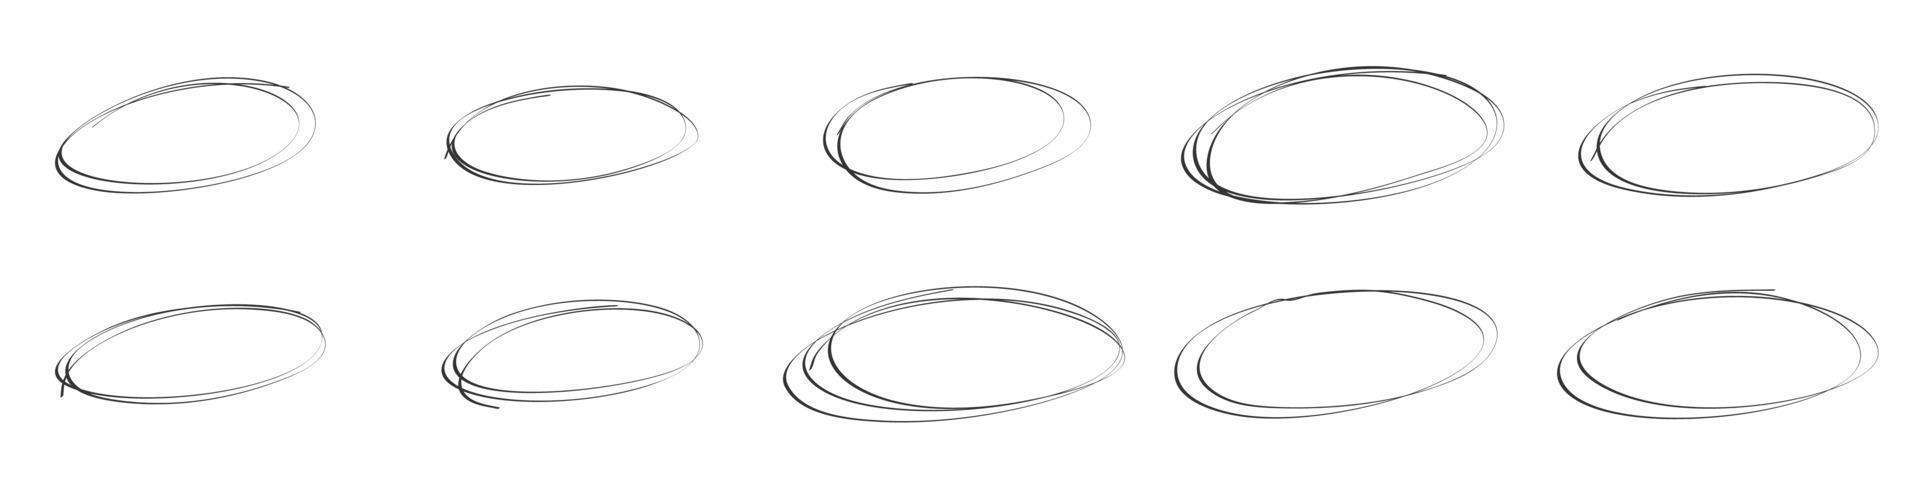 realce oval circulo marcos garabatear mano dibujado lápiz líneas. redondo cepillo marca. vector aislado ilustración